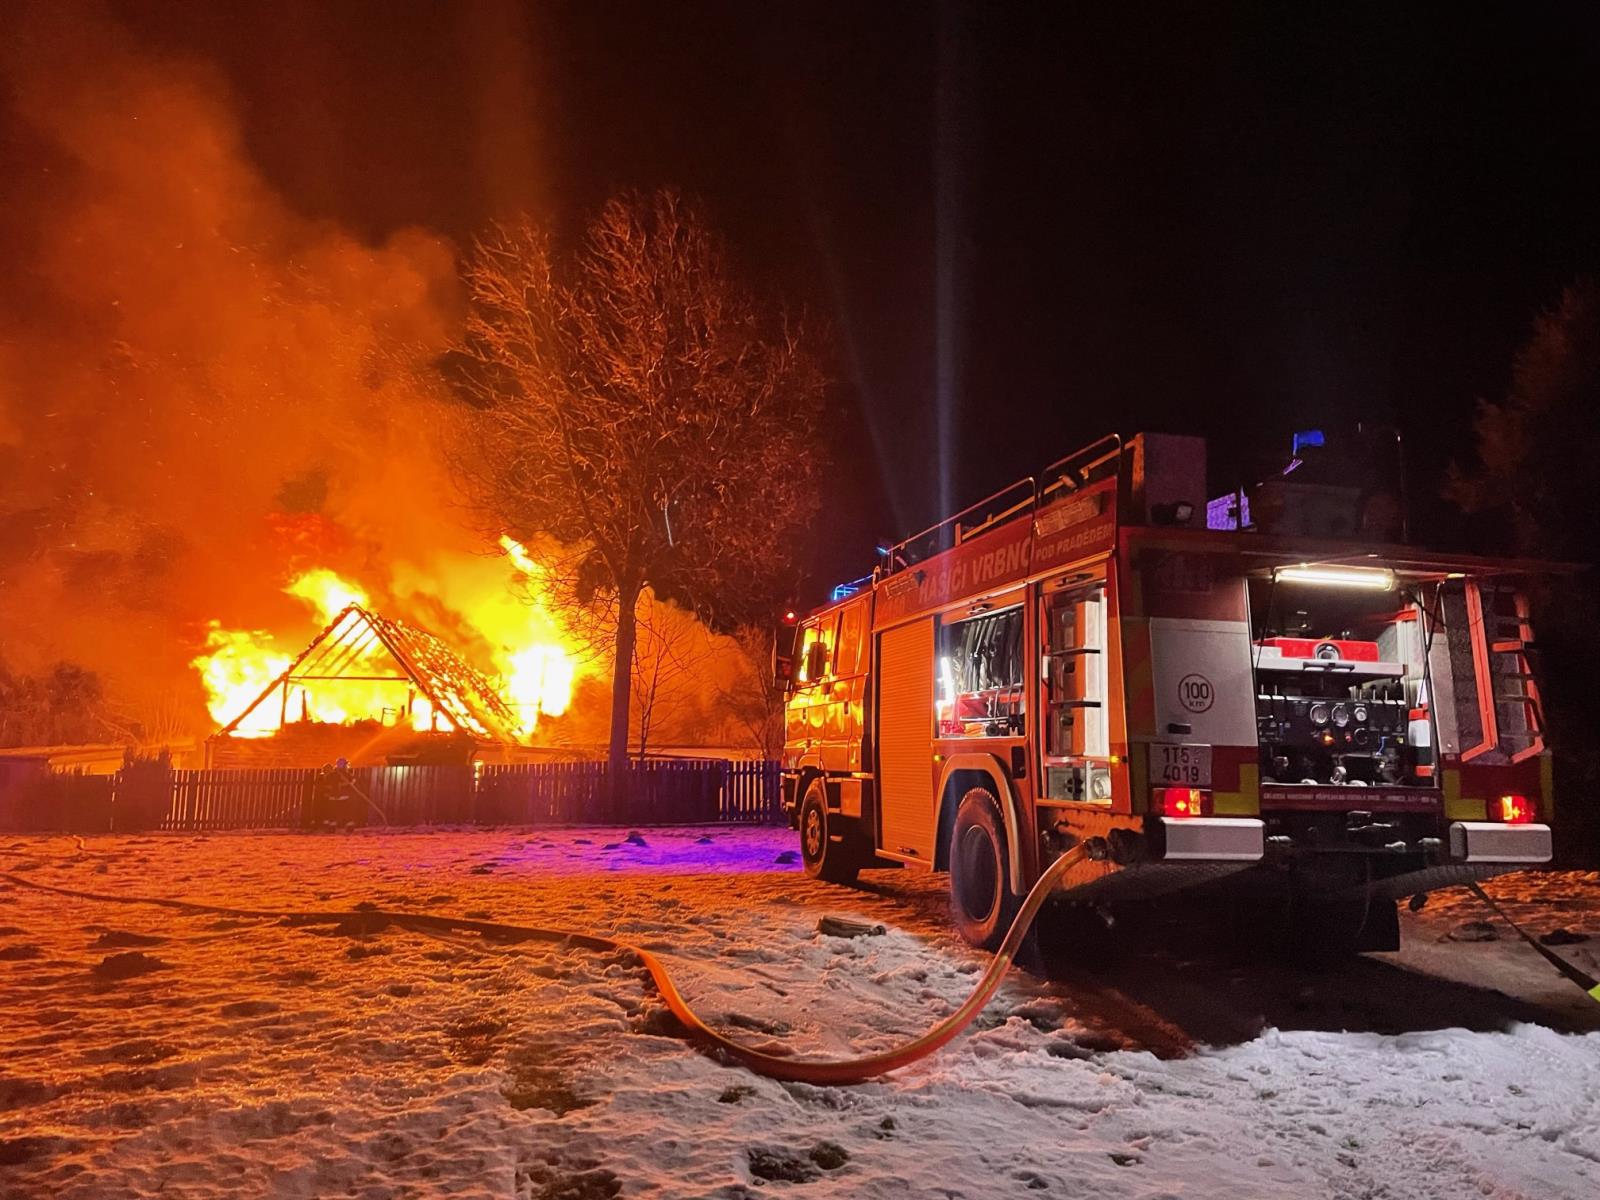 MSK_Požár rodinného domu na Bruntálsku_pohled na hořící budovu a CAS.jpg